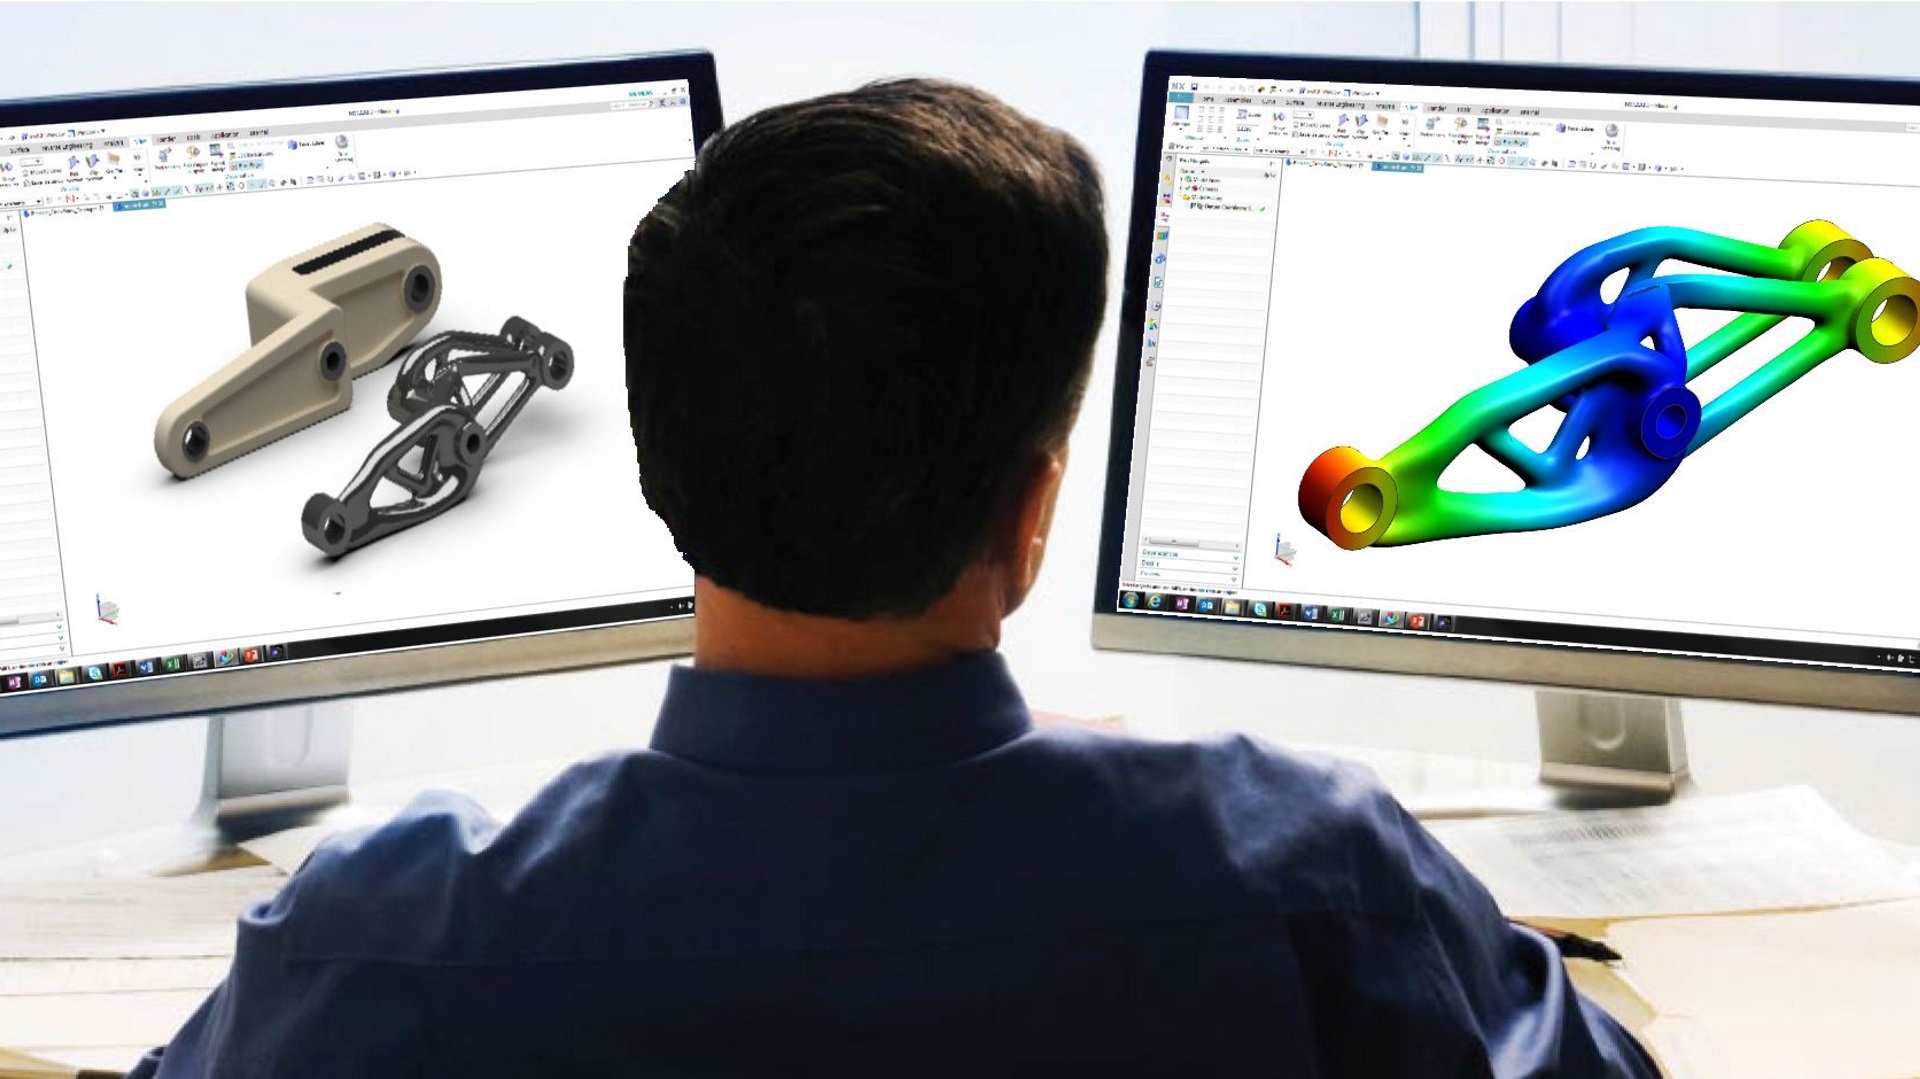 Inżynier zajmujący się optymalizacją topologii wykorzystuje oprogramowanie do wytwarzania addytywnego i druku 3D